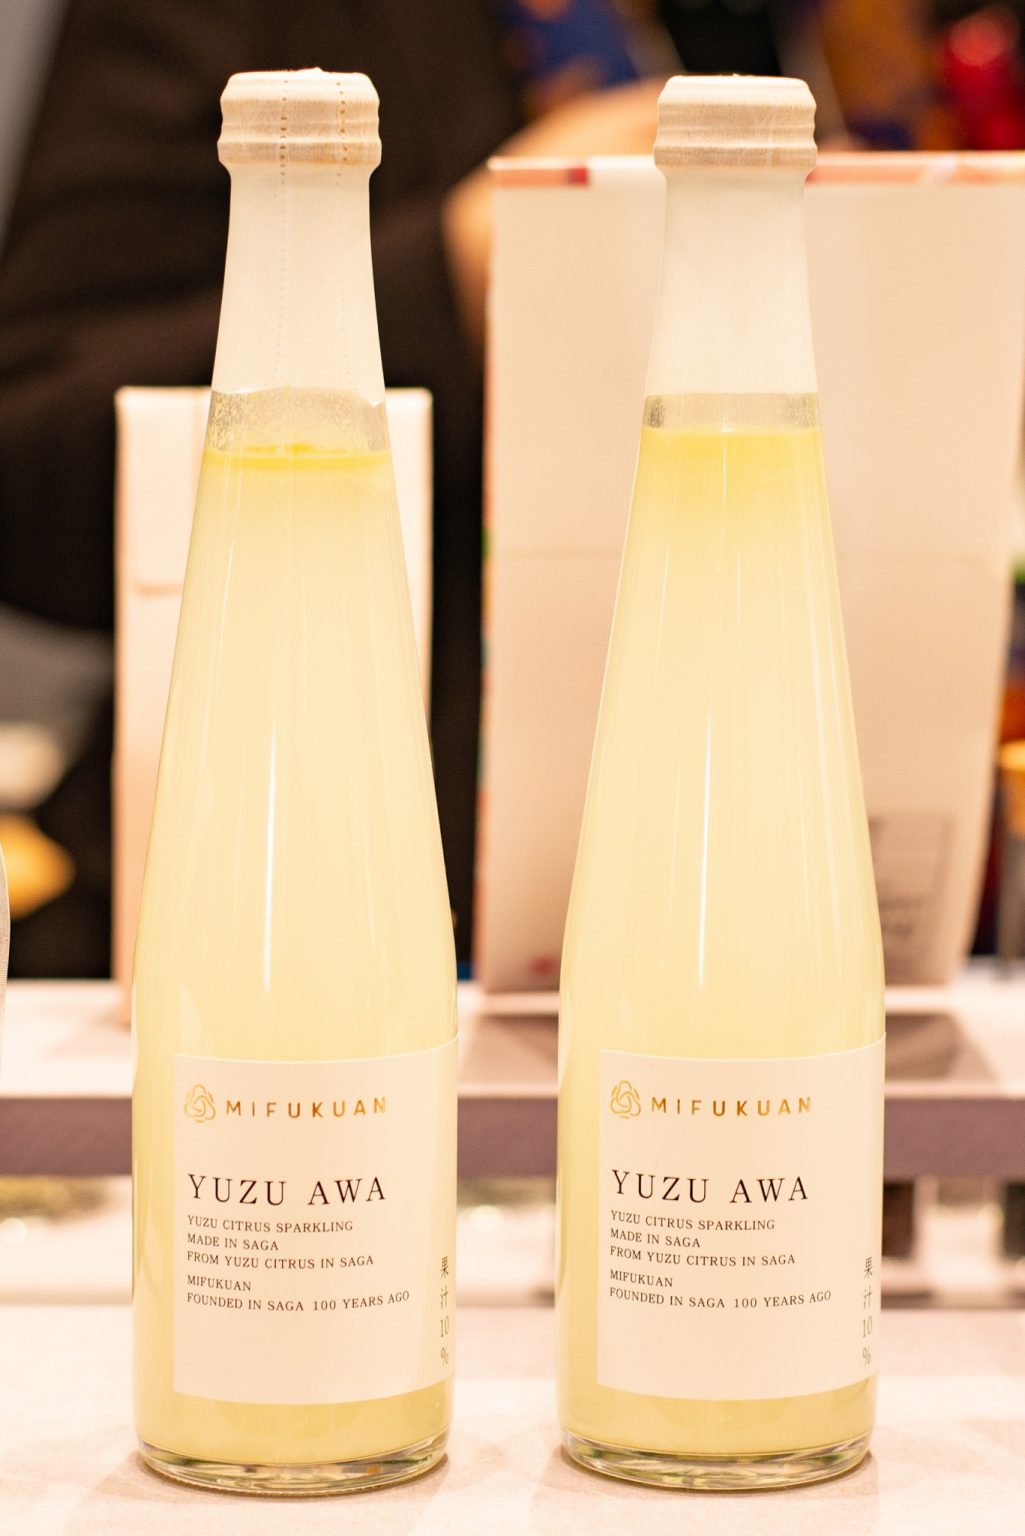 老舗粕漬・柚子こしょうメーカー〈川原食品〉が生産する柚子スパークリング「Yuzu Awa」。微炭酸で口当たりが優しく、柚子の香りがふんわりと広がります。